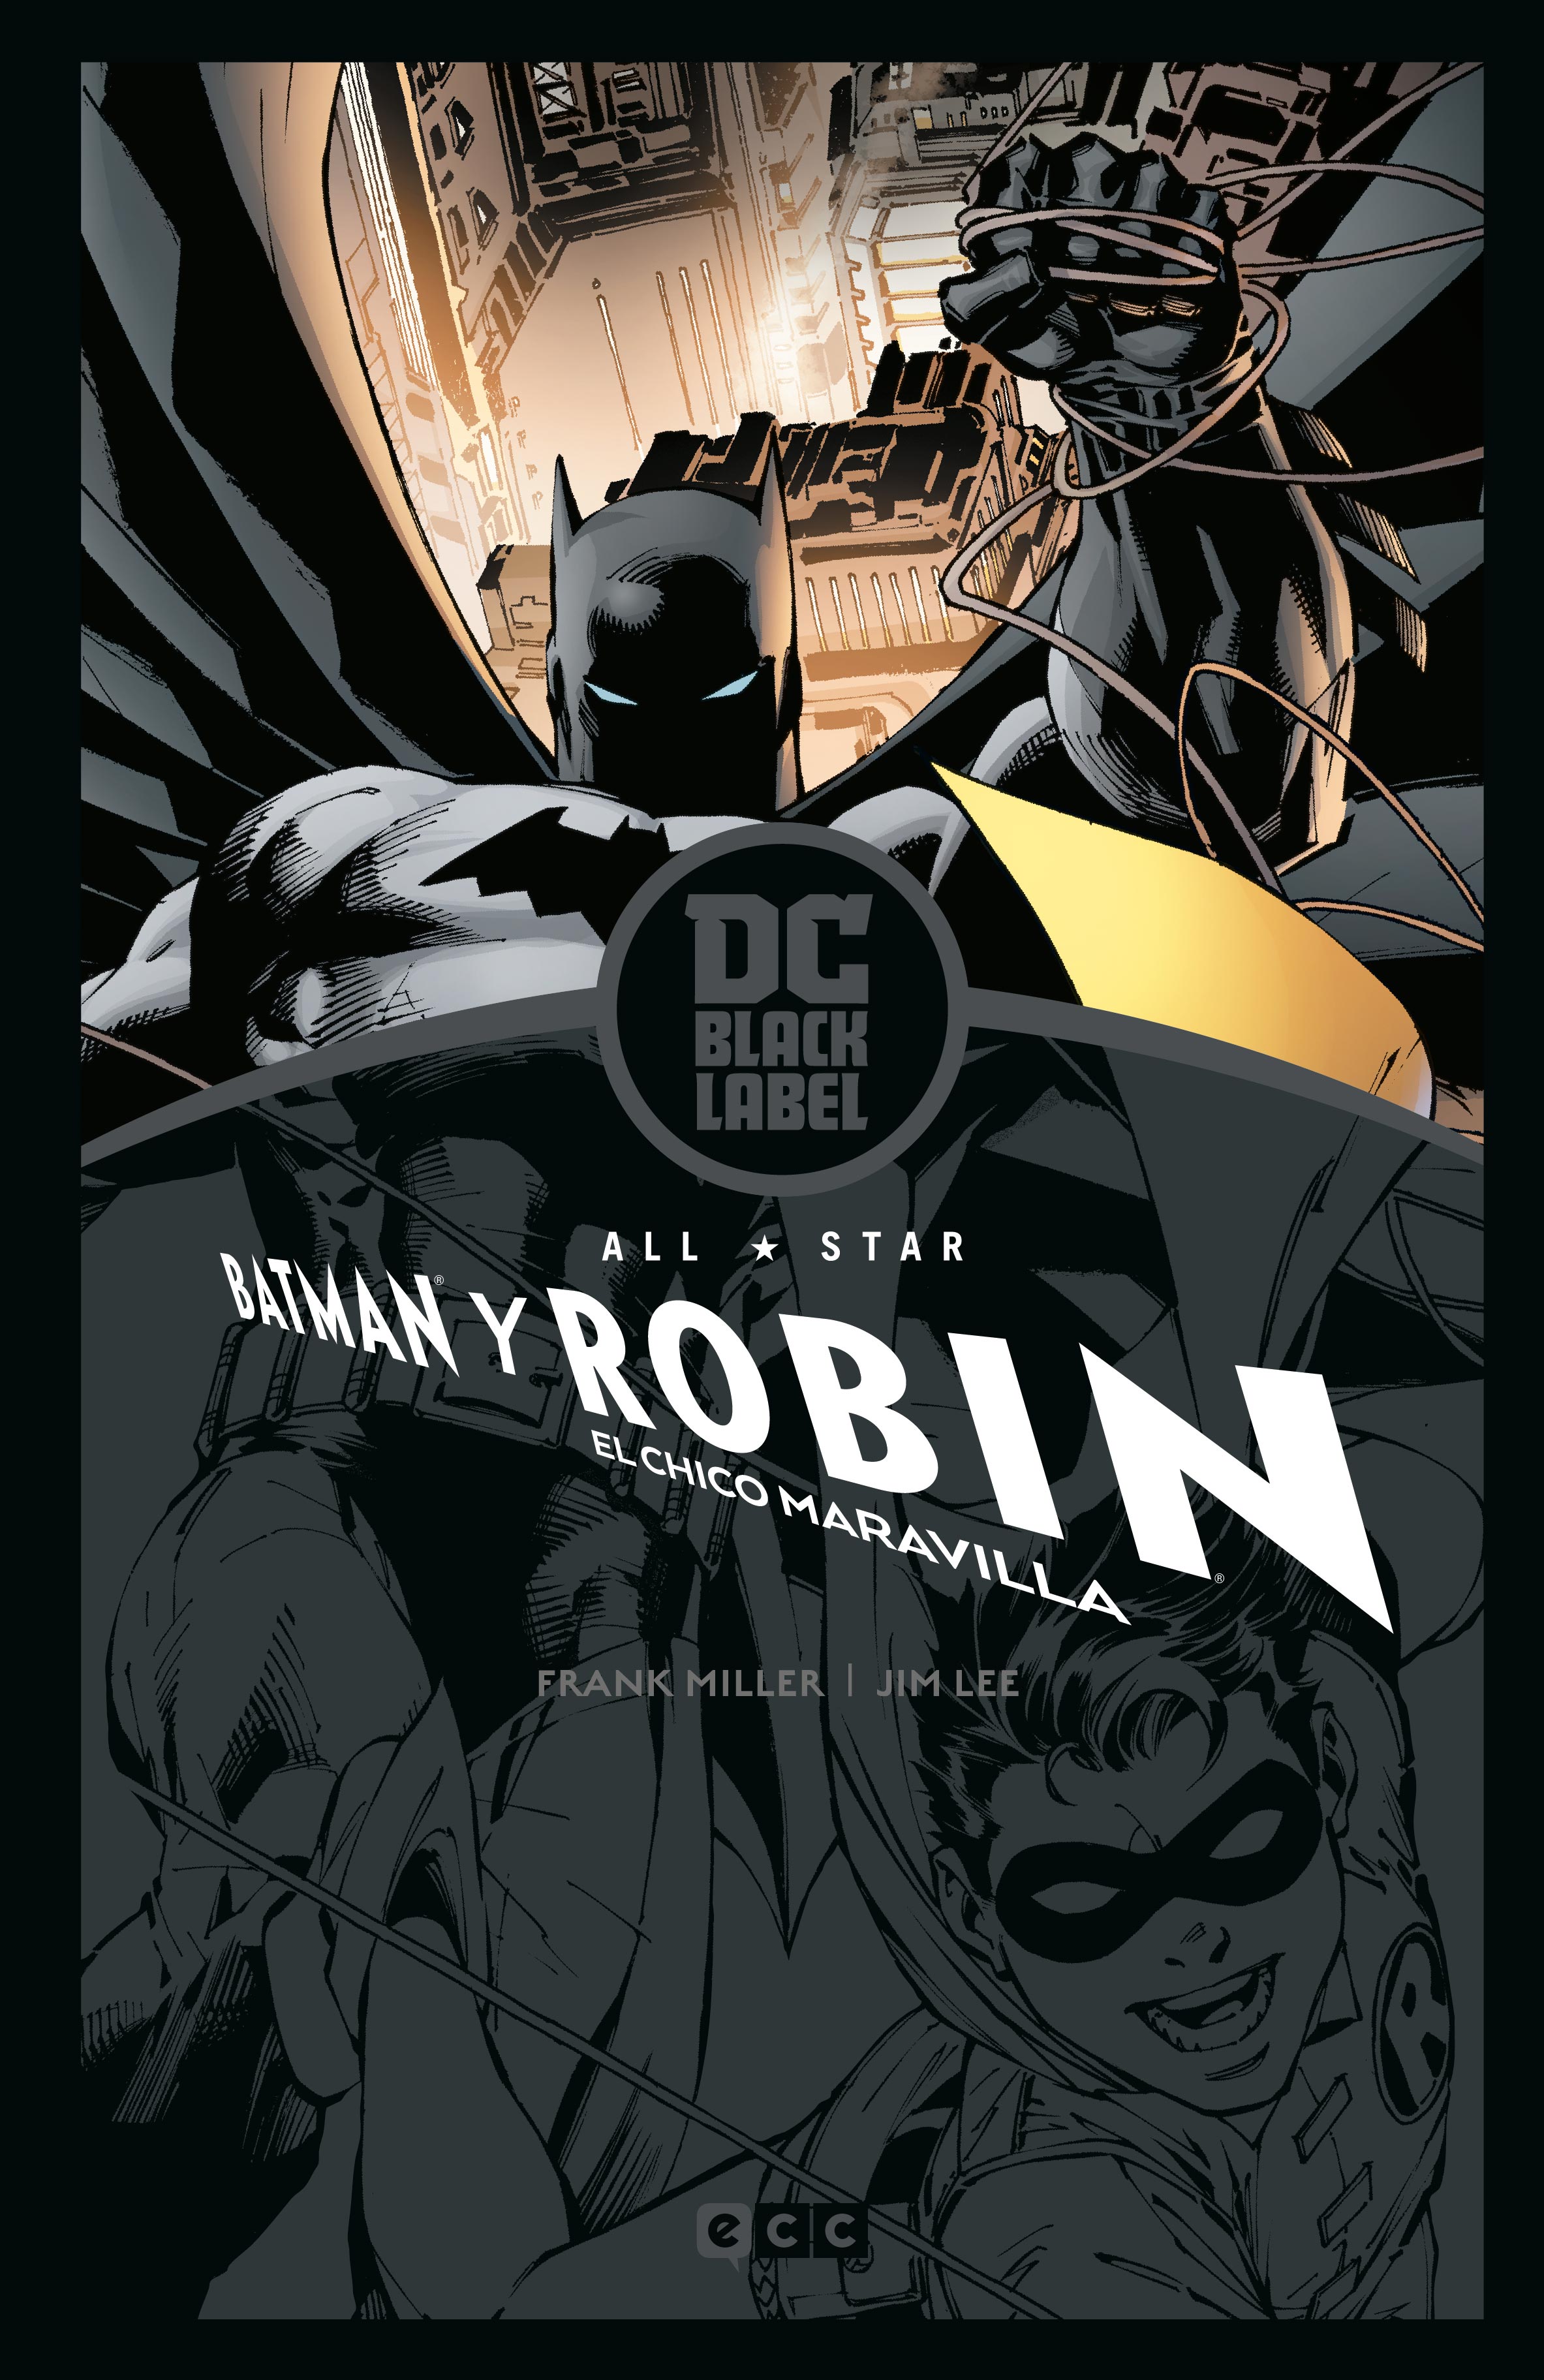 AllStar Batman y Robin, el chico maravilla – Biblioteca DC Black Label